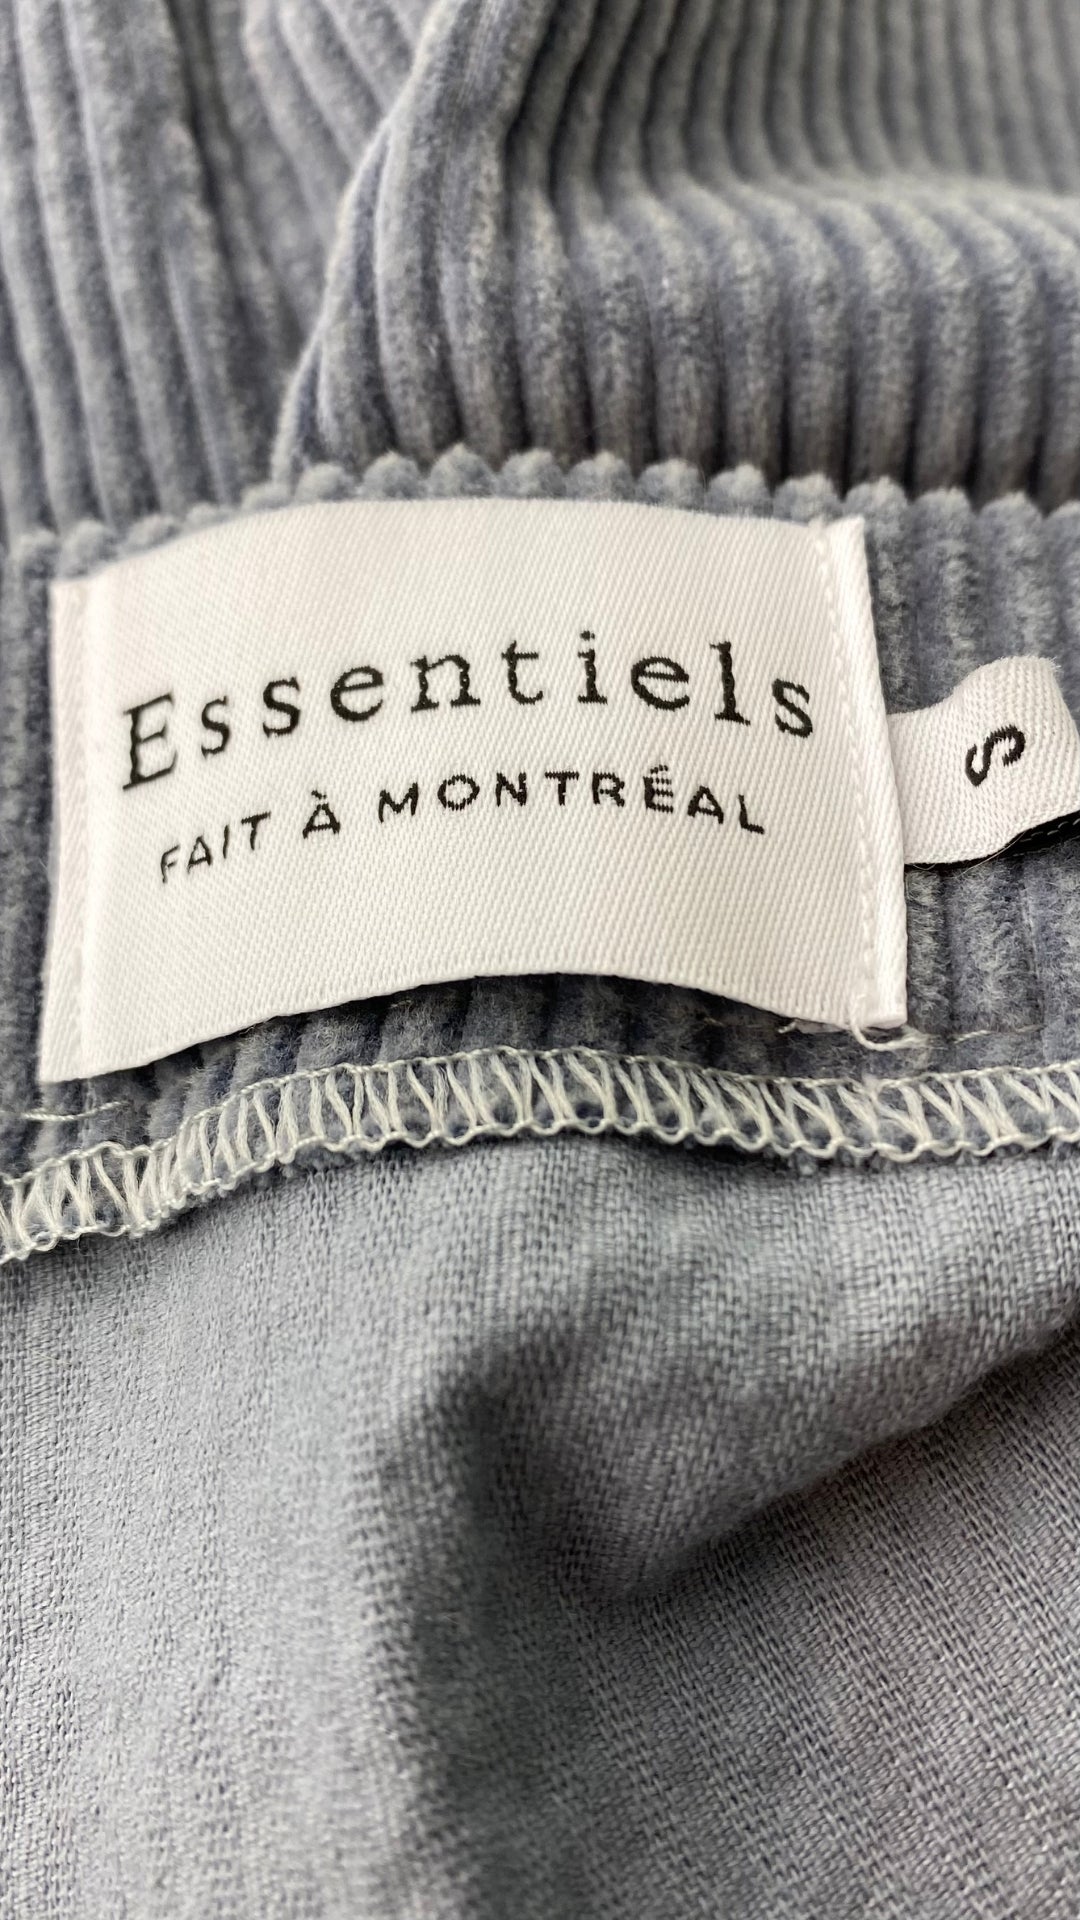 Jupe midi boutonnée gris-bleu en velours côtelé Essentiels &Co, taille small (xs). Vue de l'étiquette de marque et taille.